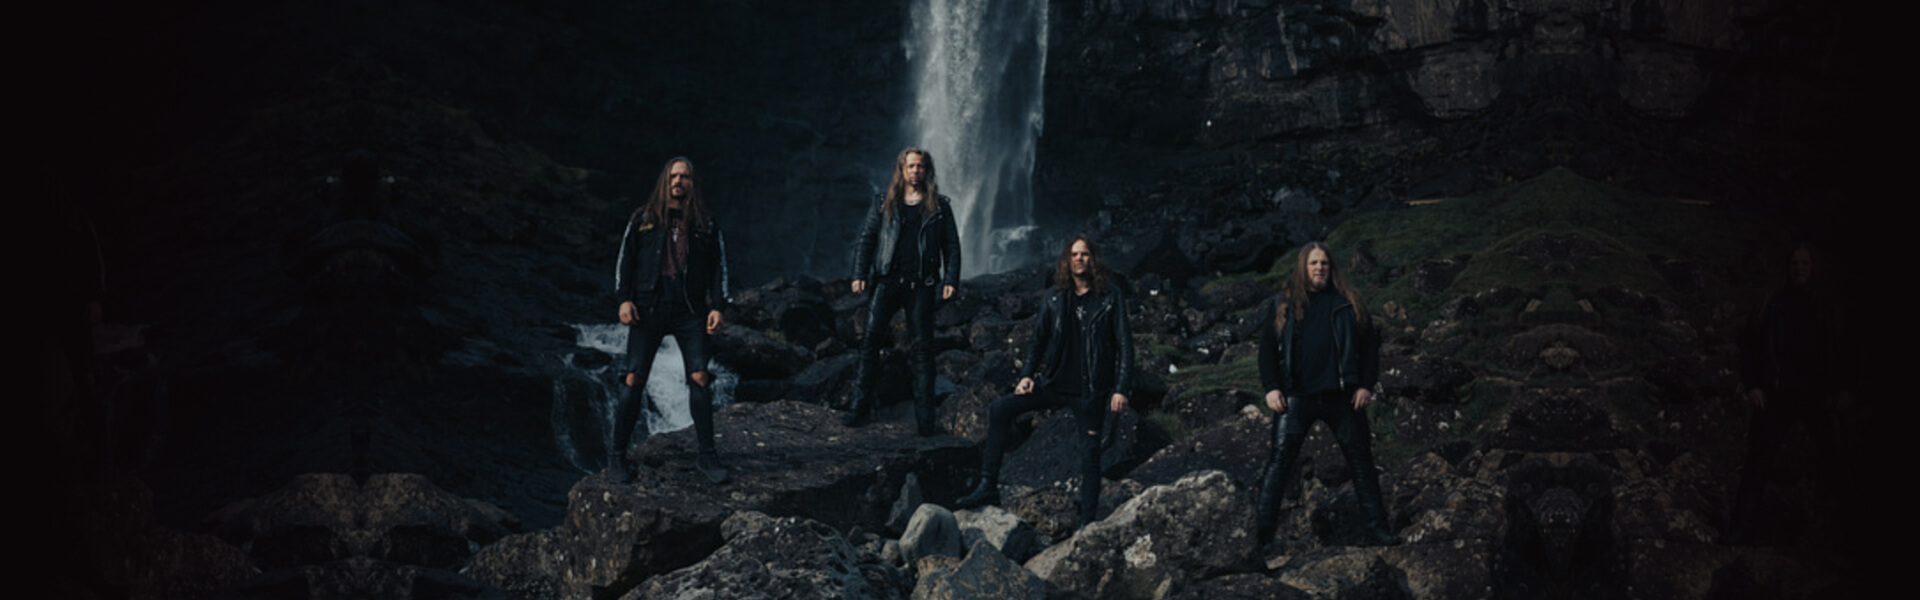 TÝR ist definitiv eine der erfolgreichsten Metalbands der Färöer Inseln.